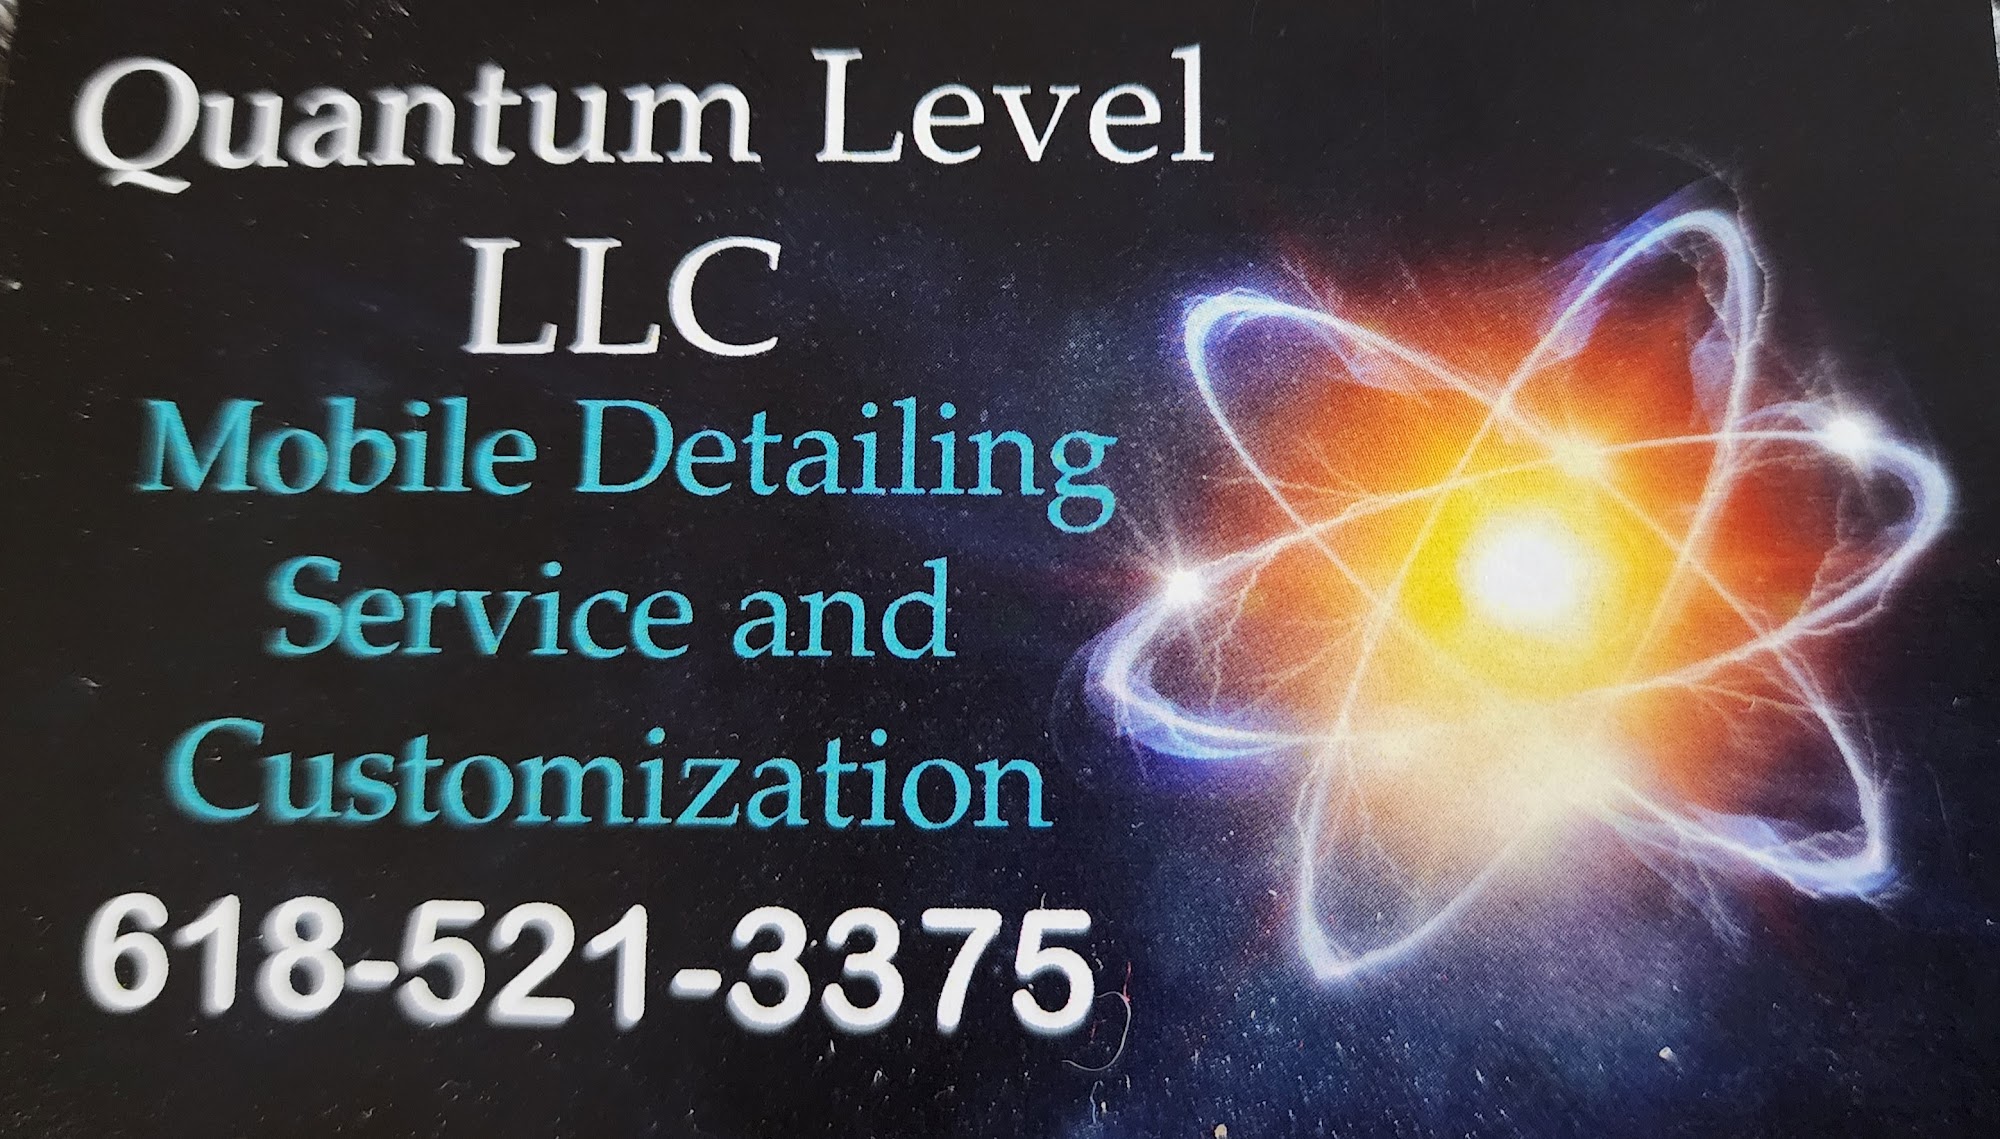 Quantum Level LLC Mobile Detailing